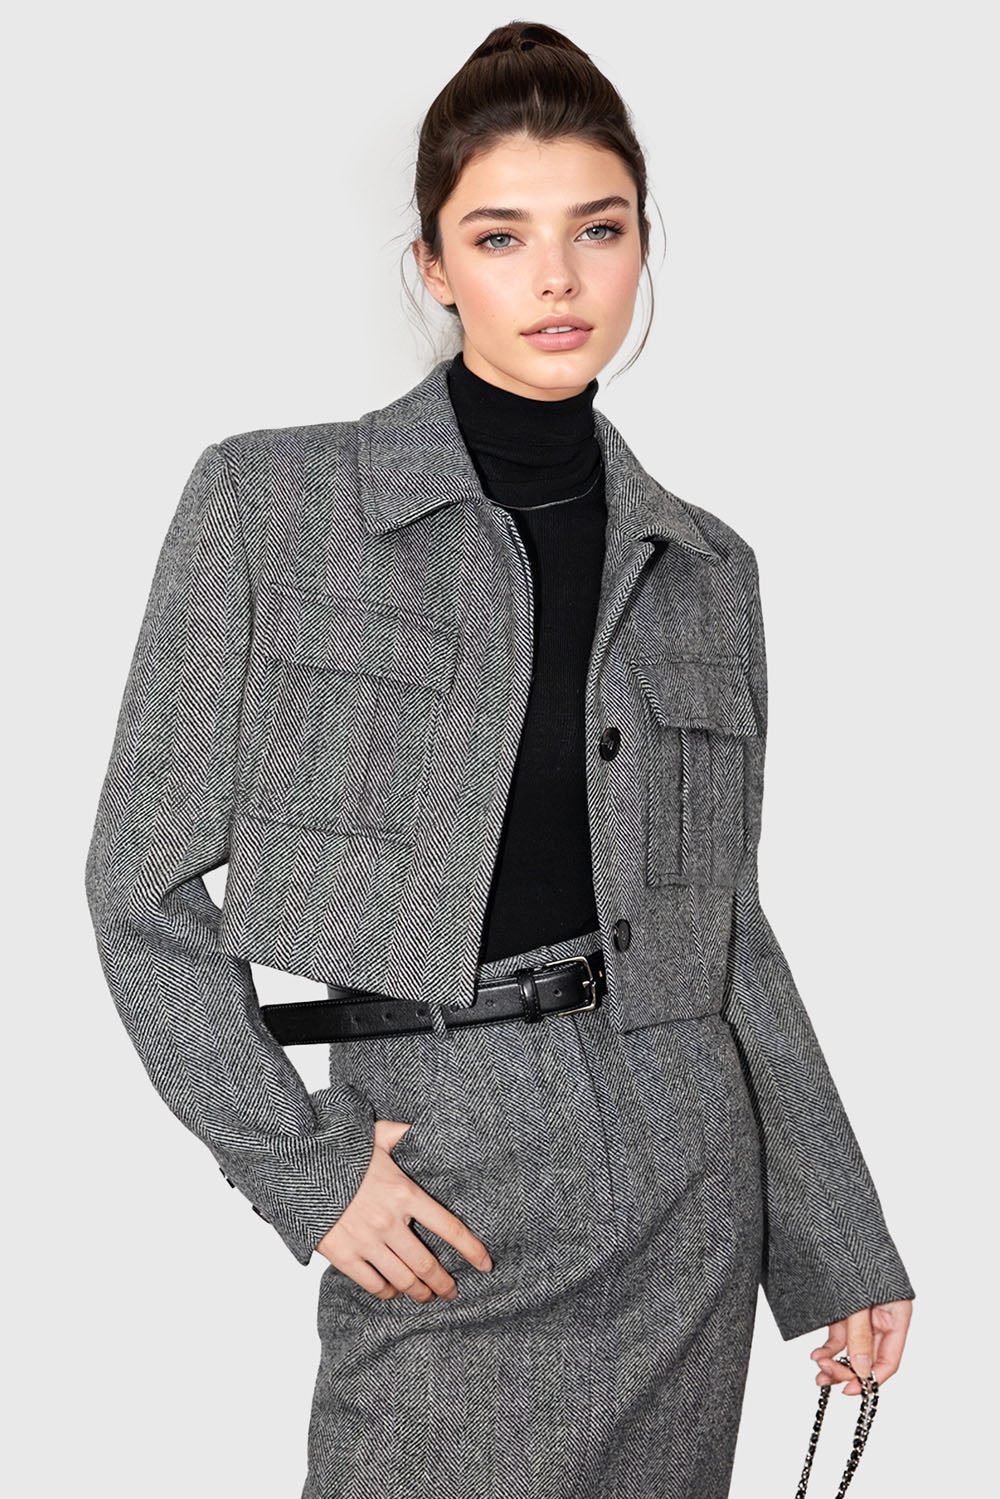 Kort tekstureret jakke med lommer - grå